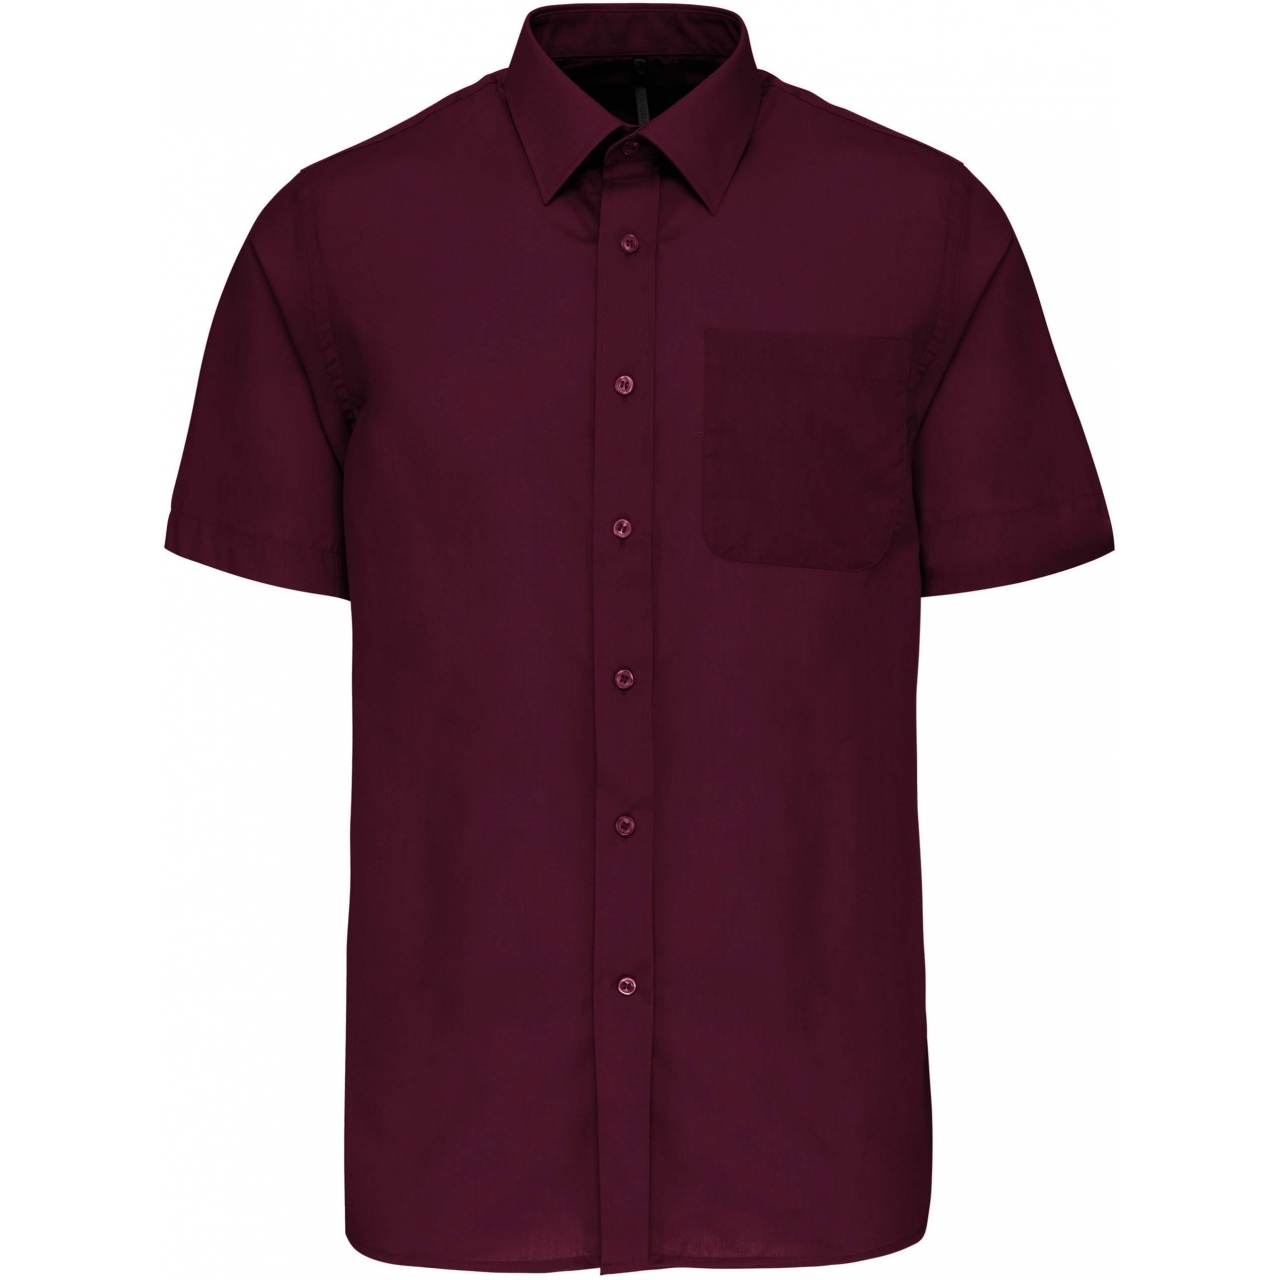 Pánská košile s krátkým rukávem Kariban ACE - tmavě červená, M